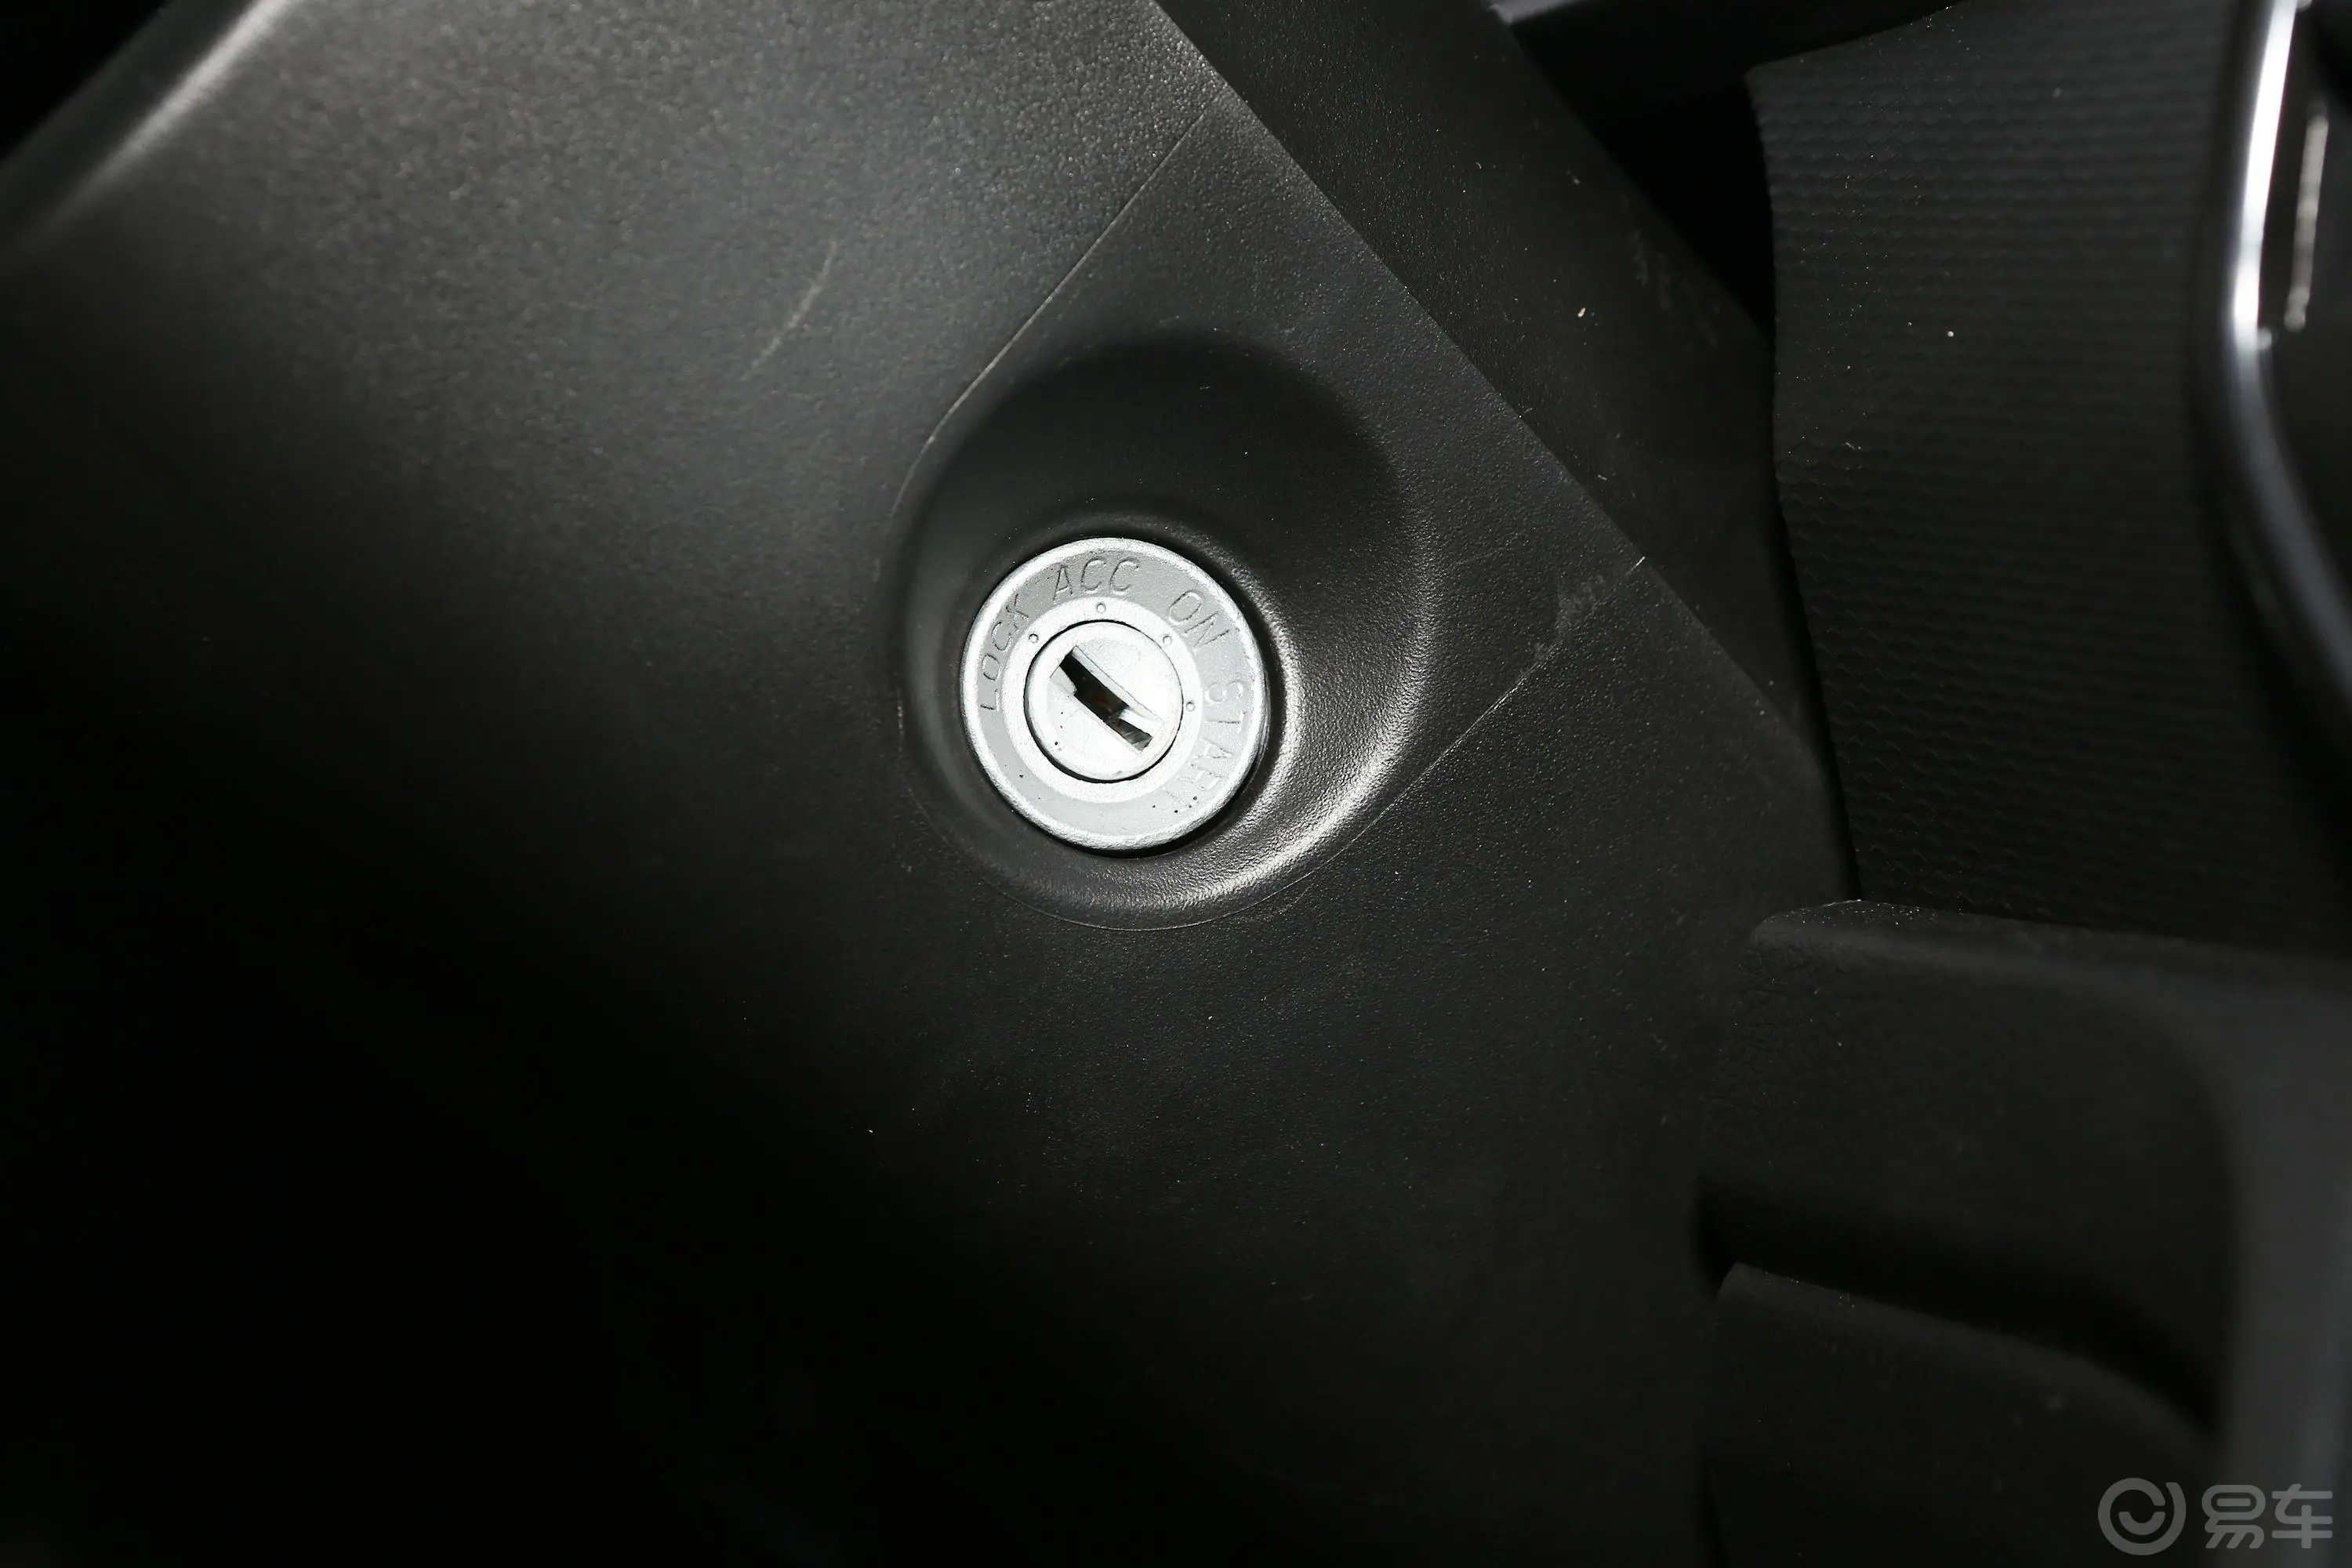 东风小康C561.5L 手动 舒适型Ⅰ钥匙孔或一键启动按键